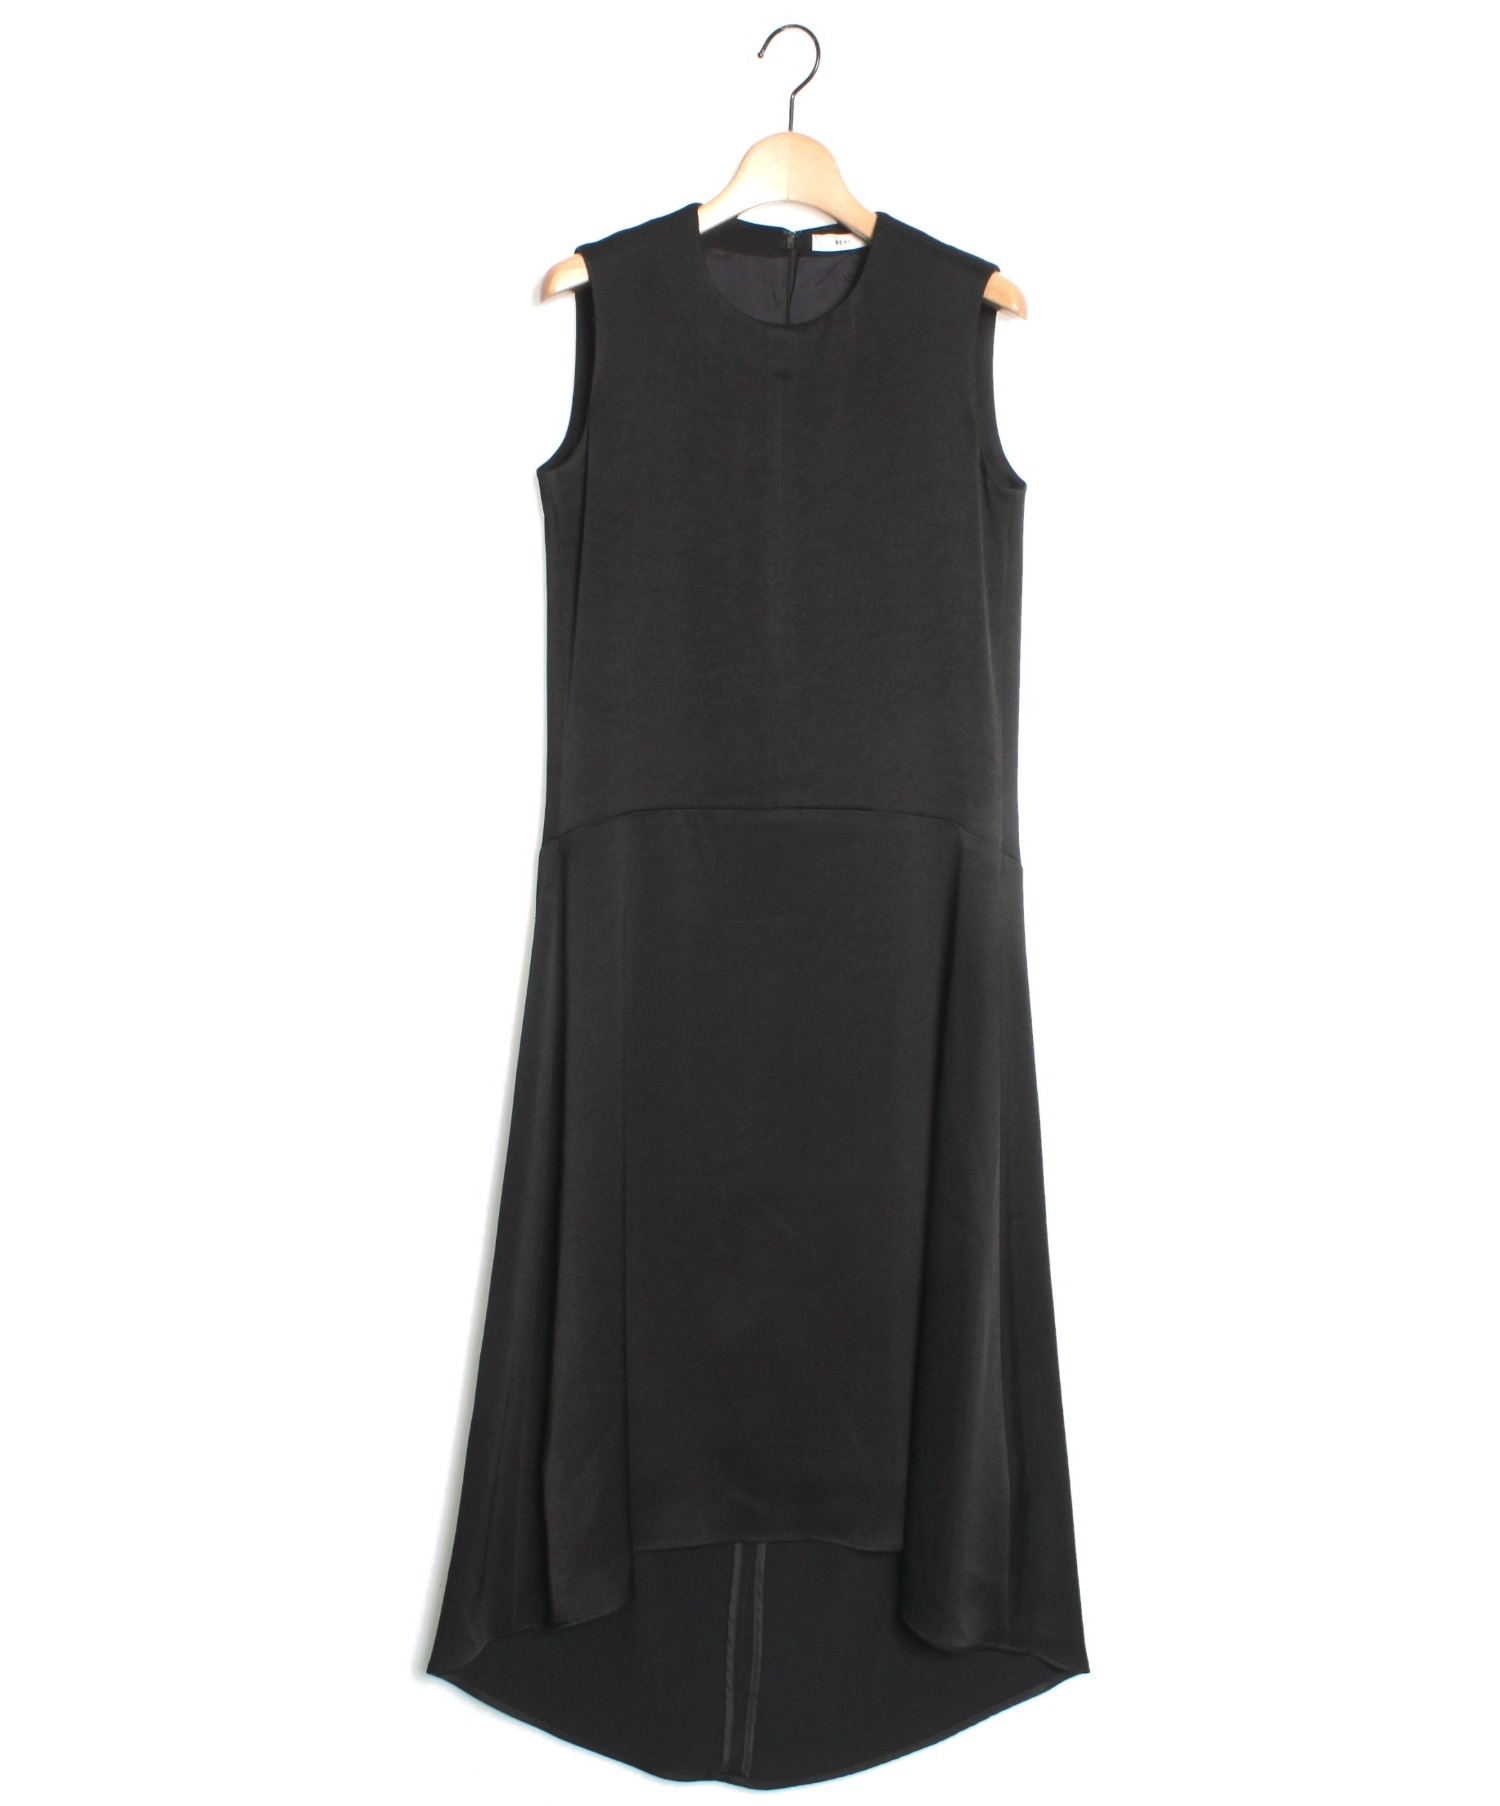 REYC (リック) バックコクーンドレス ブラック サイズ:34